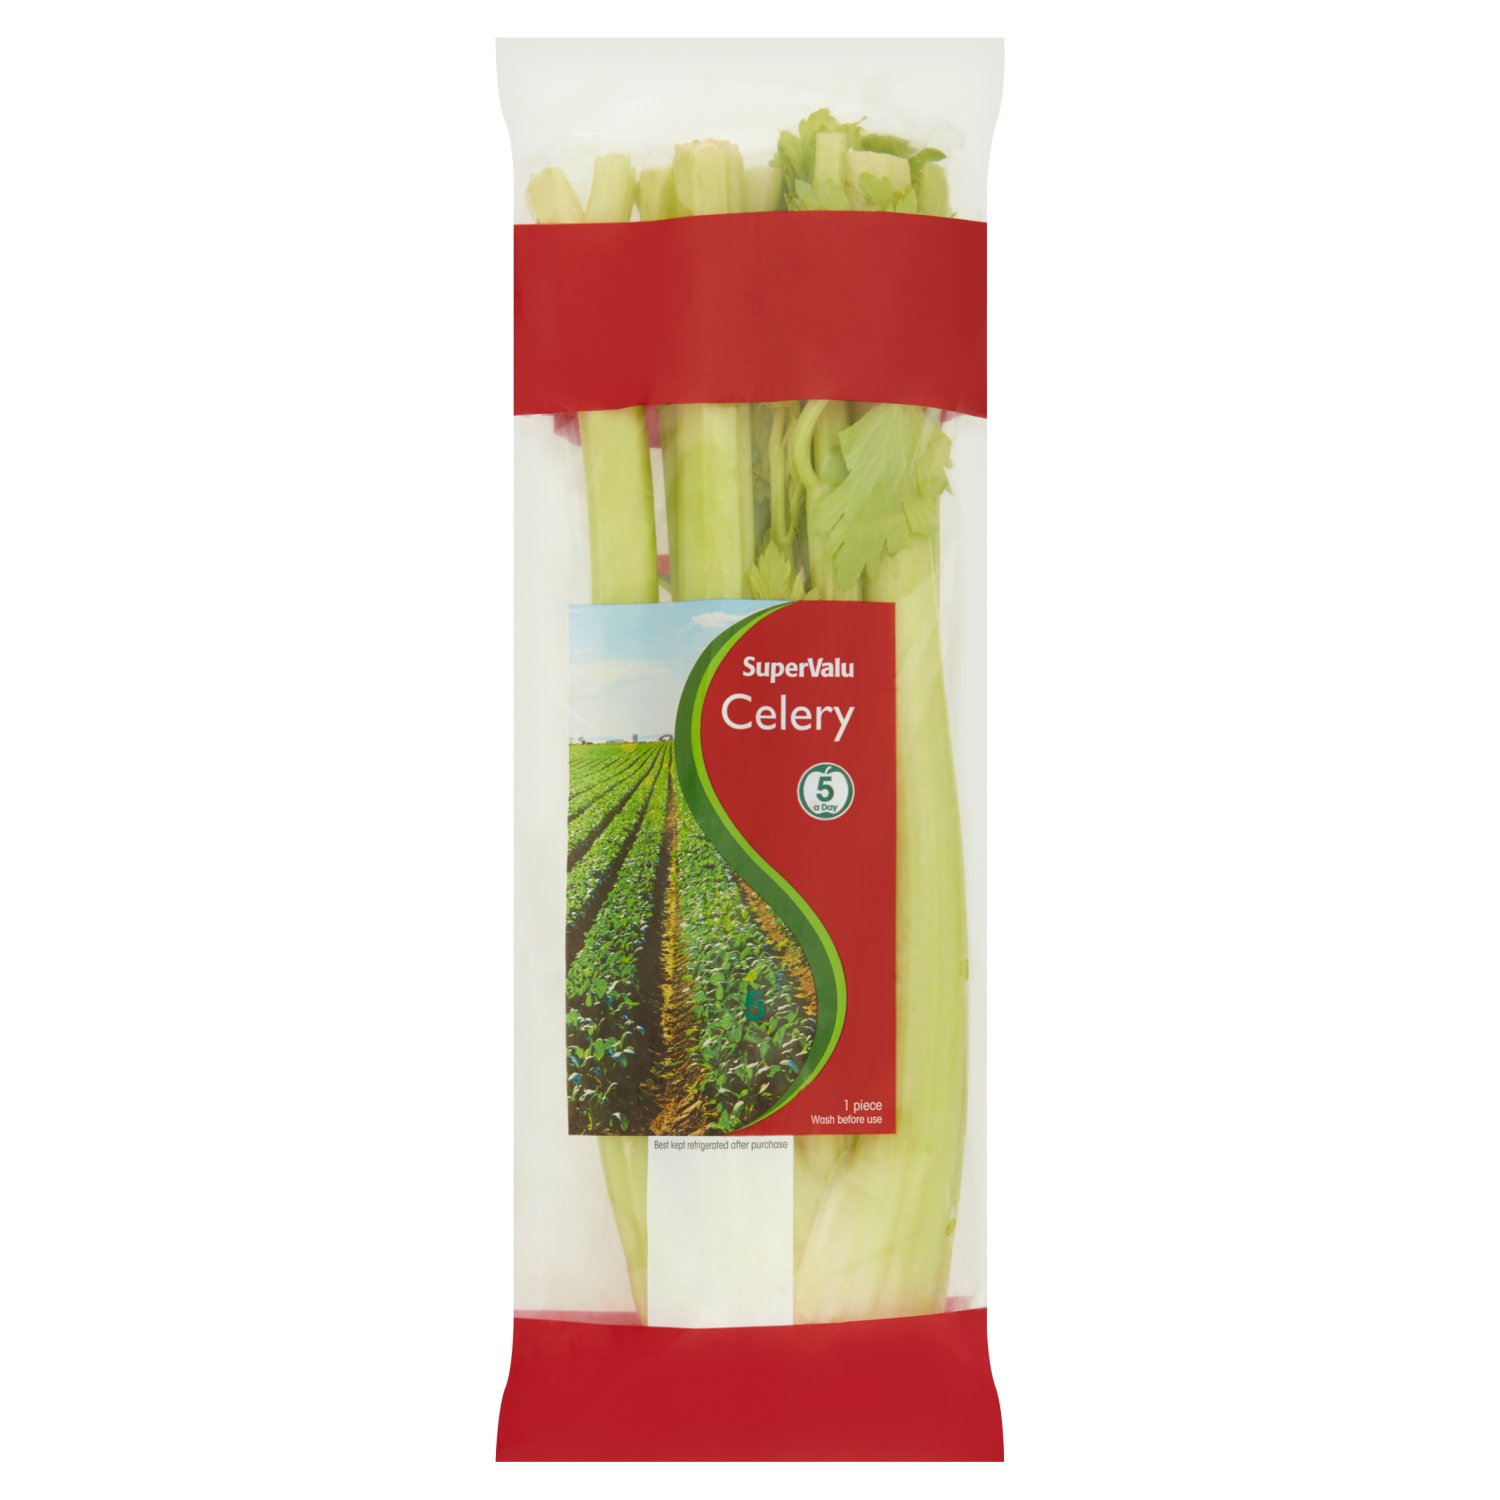 SuperValu Celery Import (1 Piece)